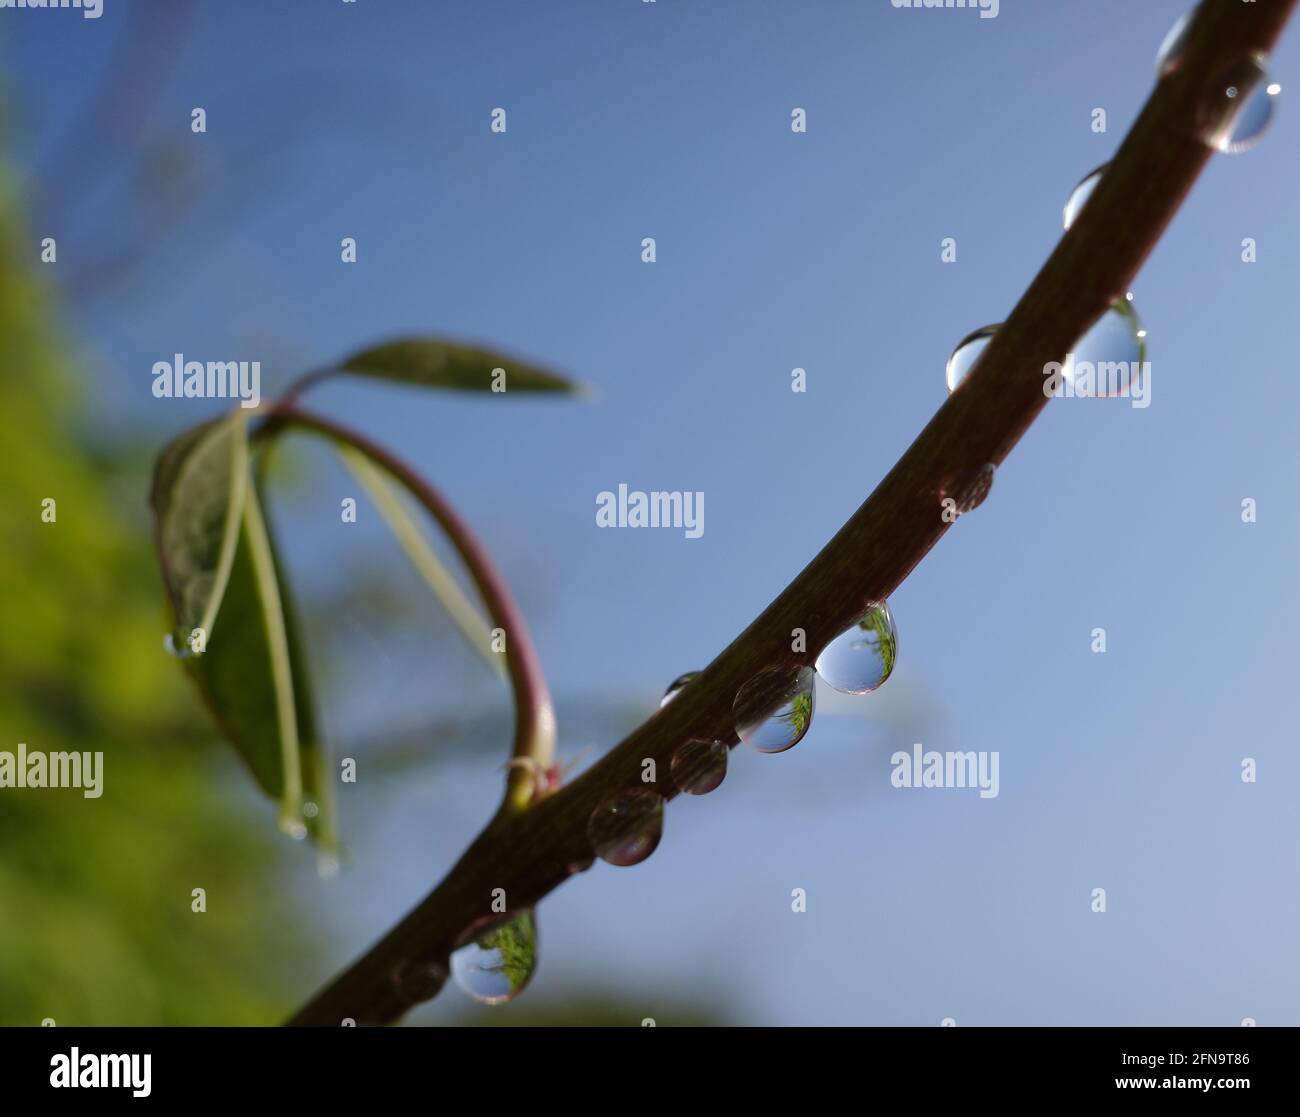 Gotas de lluvia en los tallos de una planta trepadora contra un cielo azul. El reflejo de una hoja se puede ver en las gotas. La planta es una akebia de cinco hojas. Foto de stock